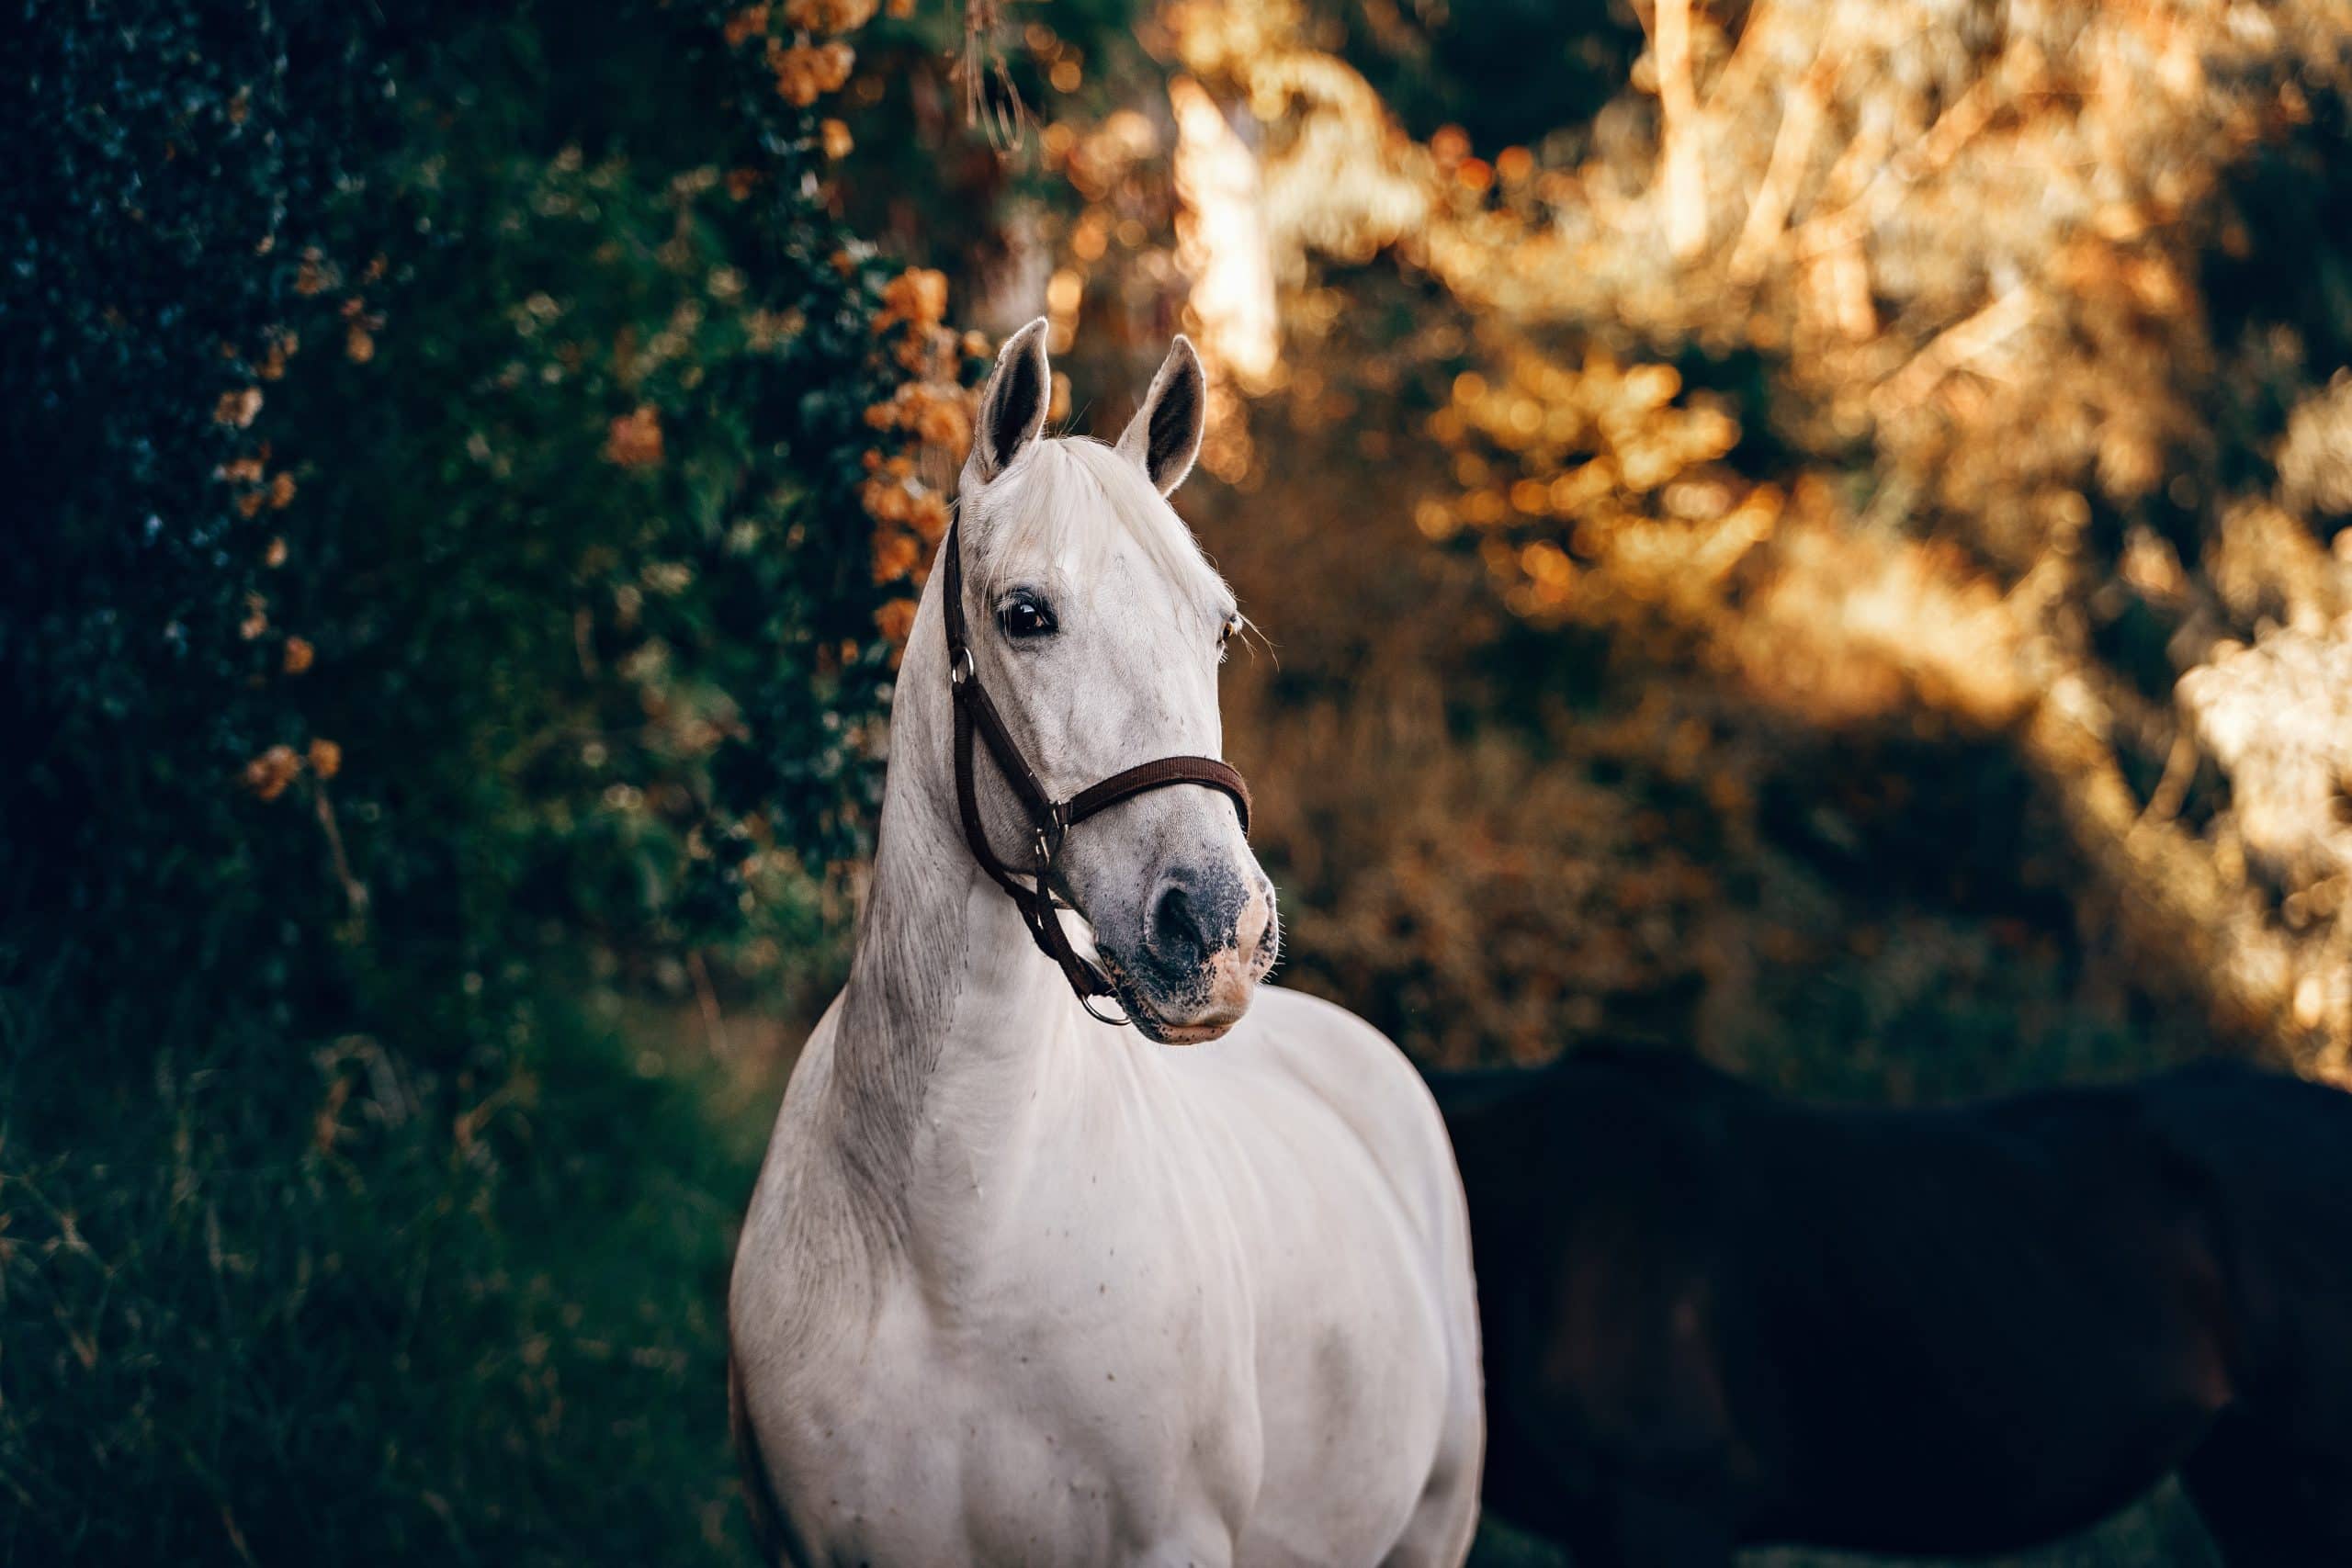 Understanding colic in horses